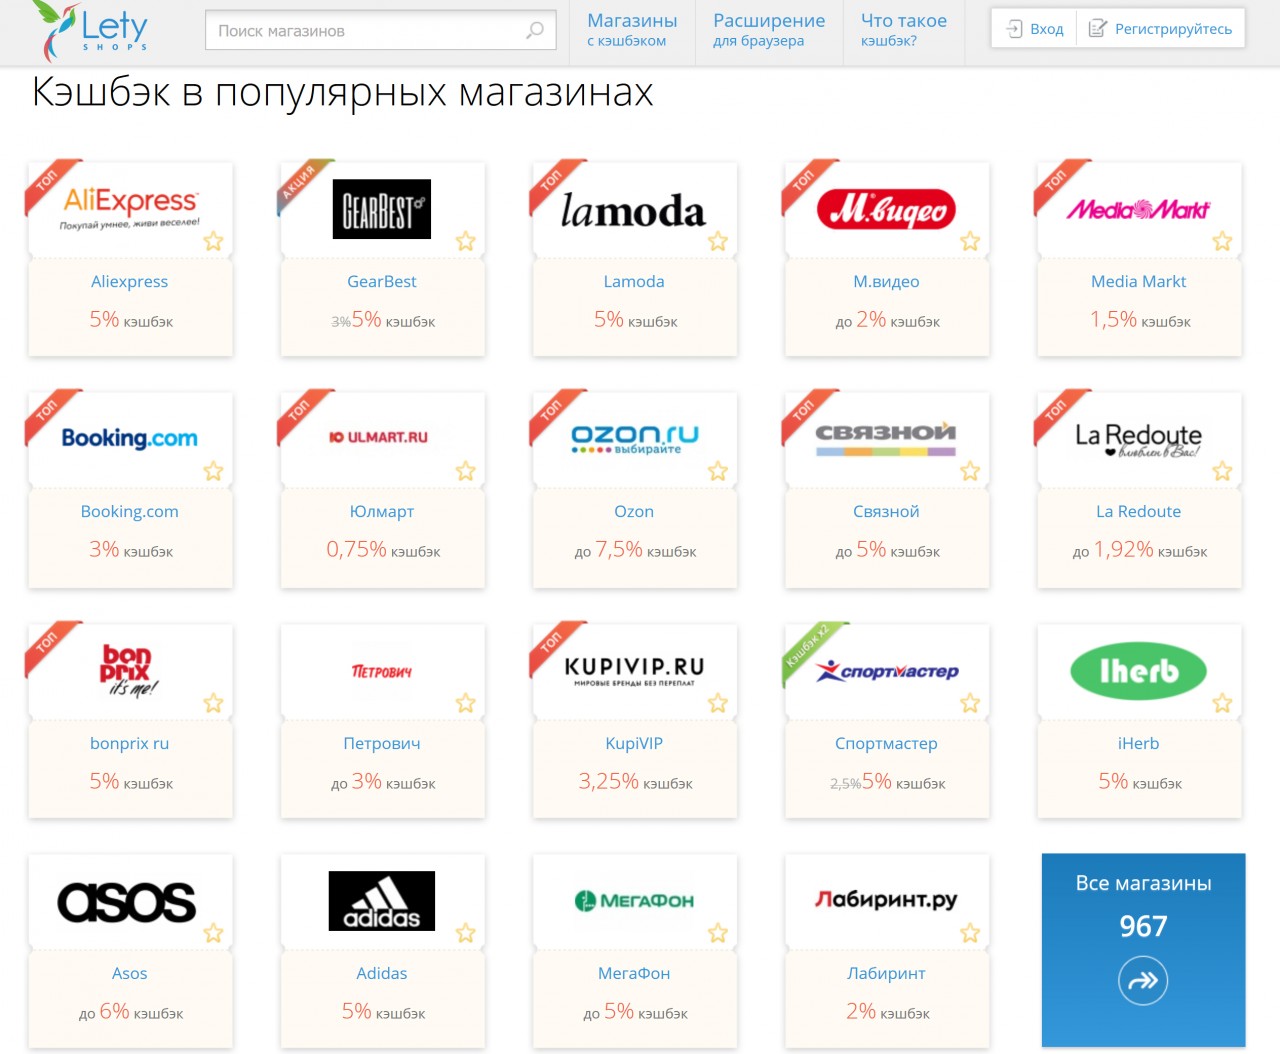 Список интернет магазинов в россии. Известные интернет магазины. Популярные интернет магазины. Популярные магазины.